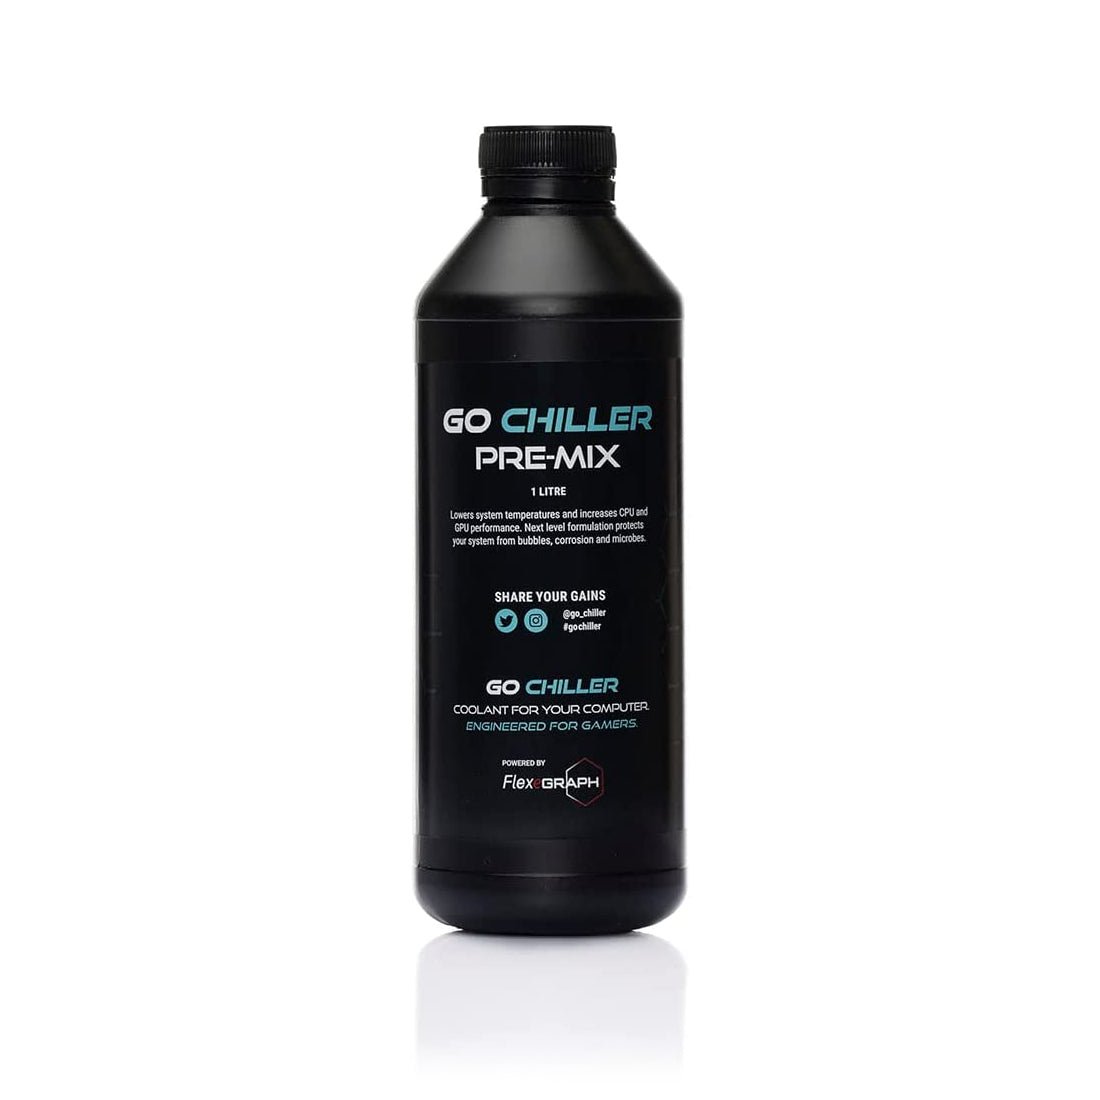 Go Chiller Original Premix Cooling Liquid - سائل تبريد - Store 974 | ستور ٩٧٤